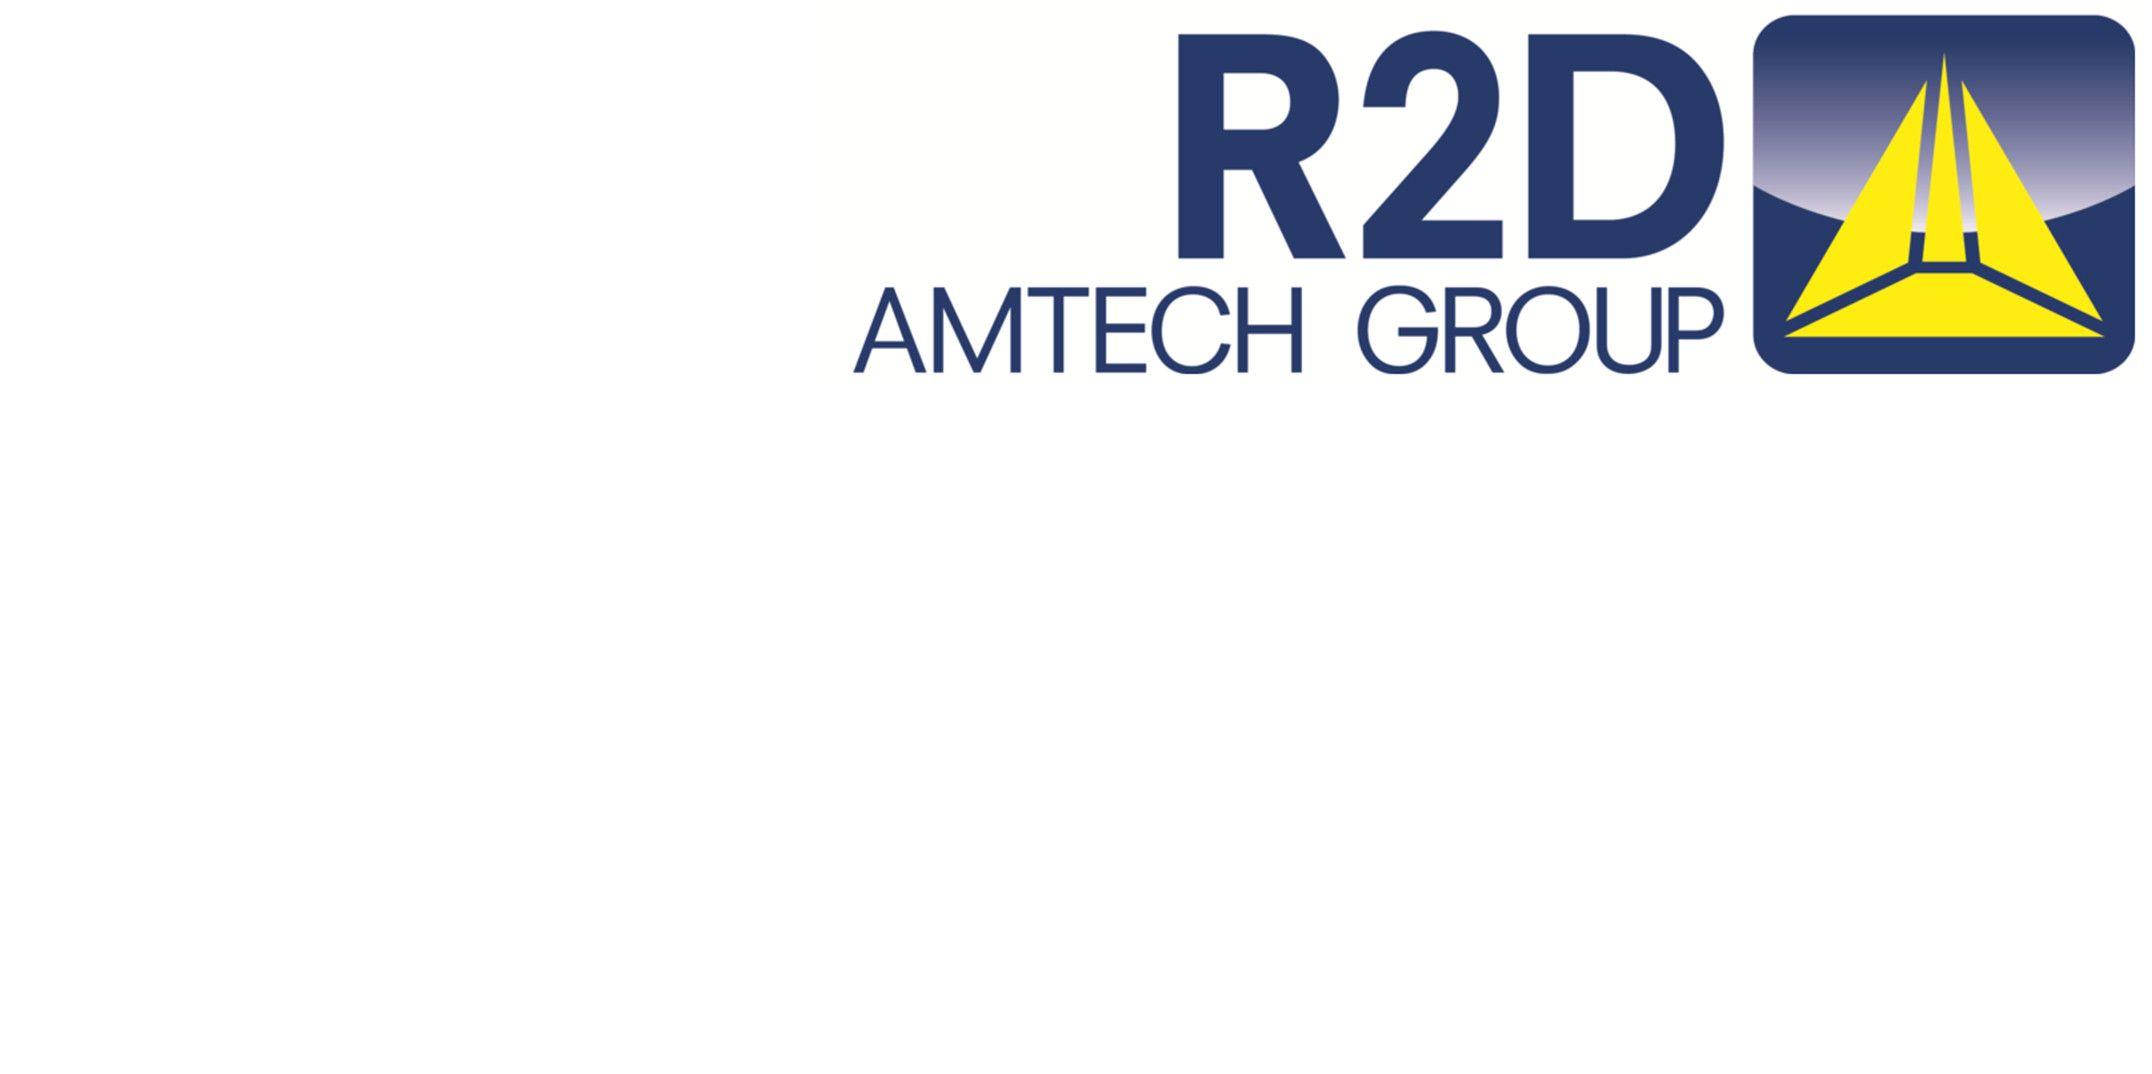 R2D Logo - R2D AUTOMATION